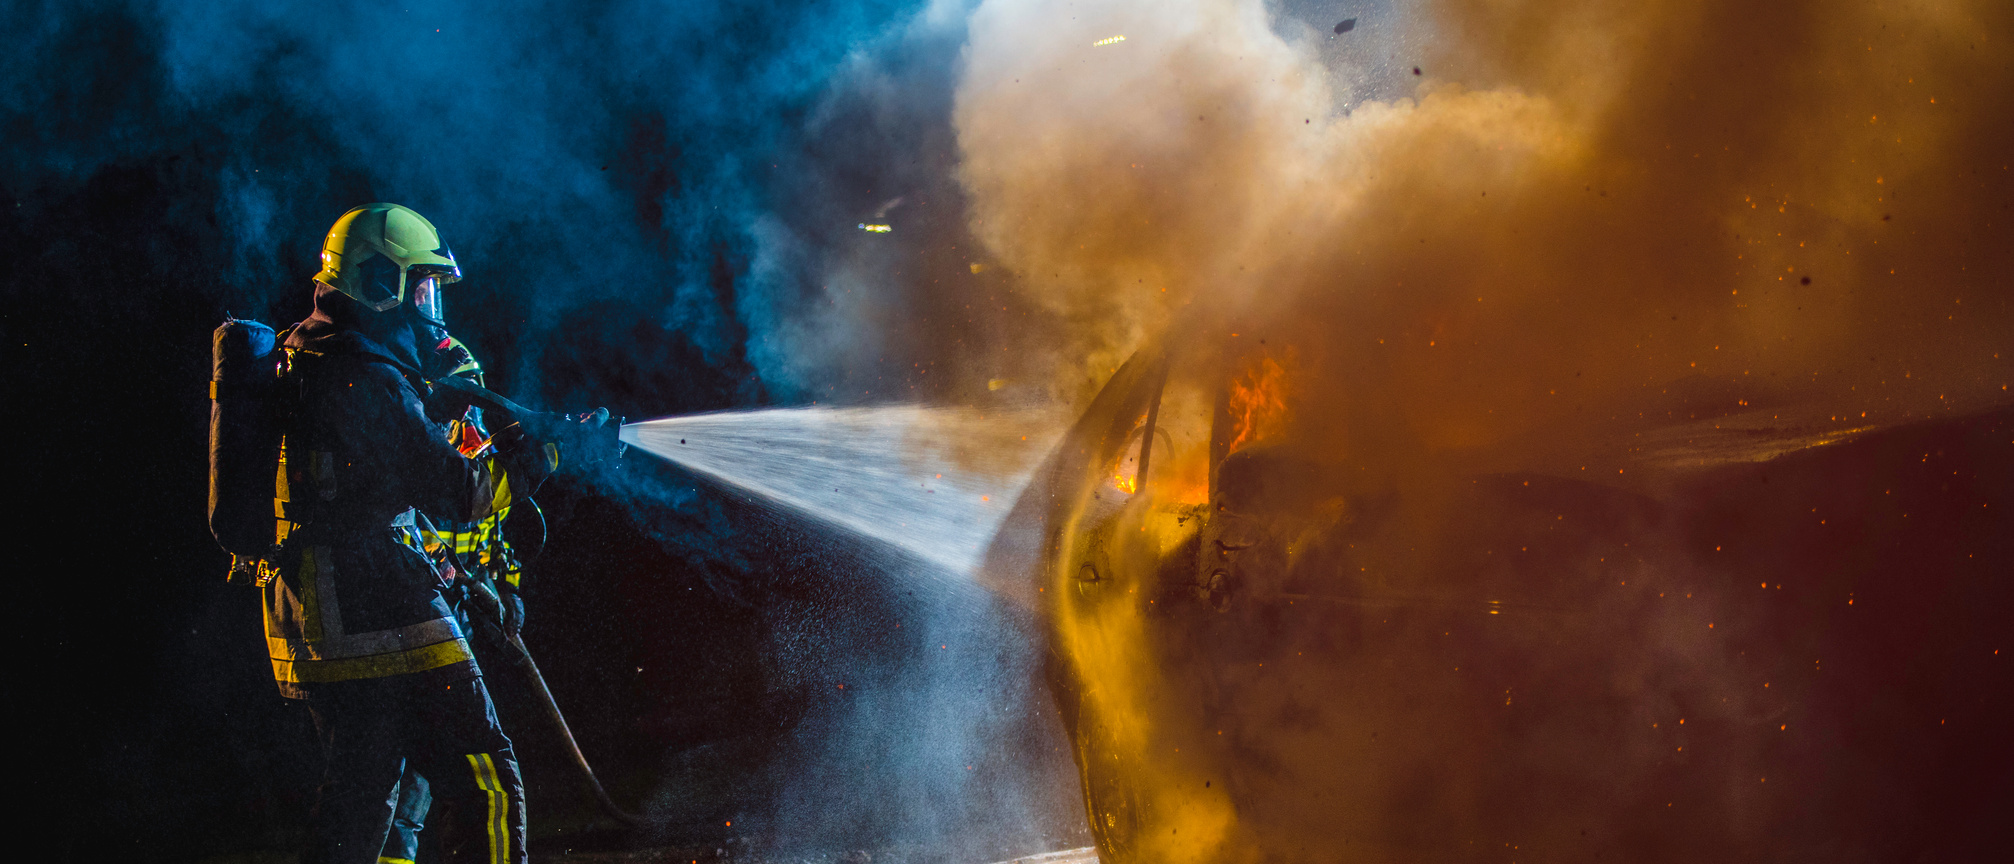 Fireman extinguishing a burning car